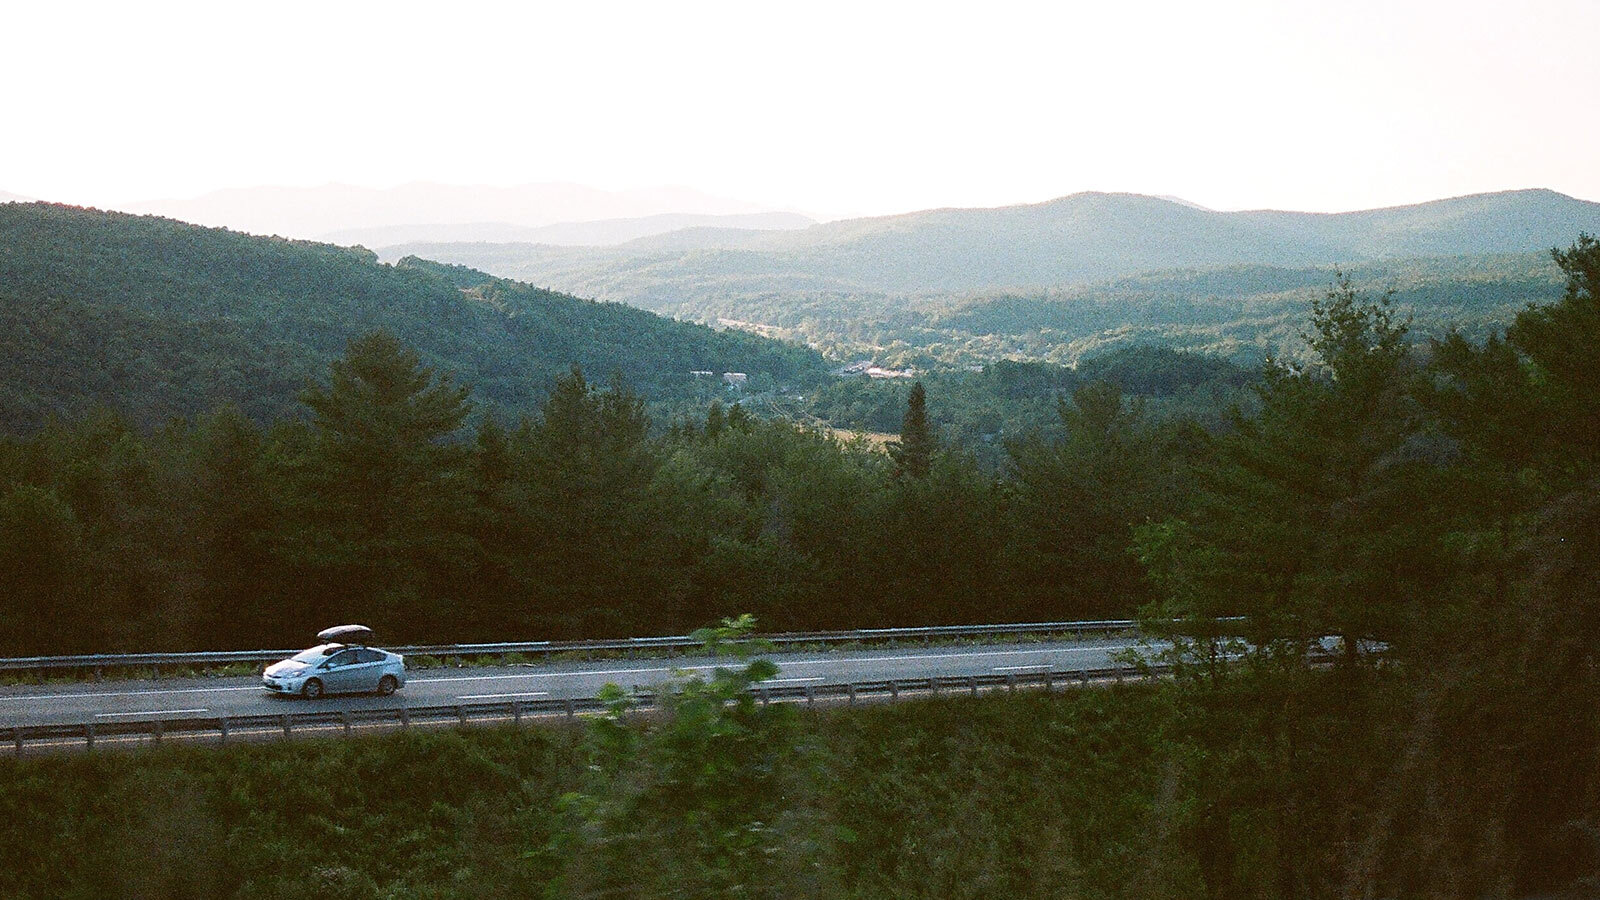 Vermont scenes